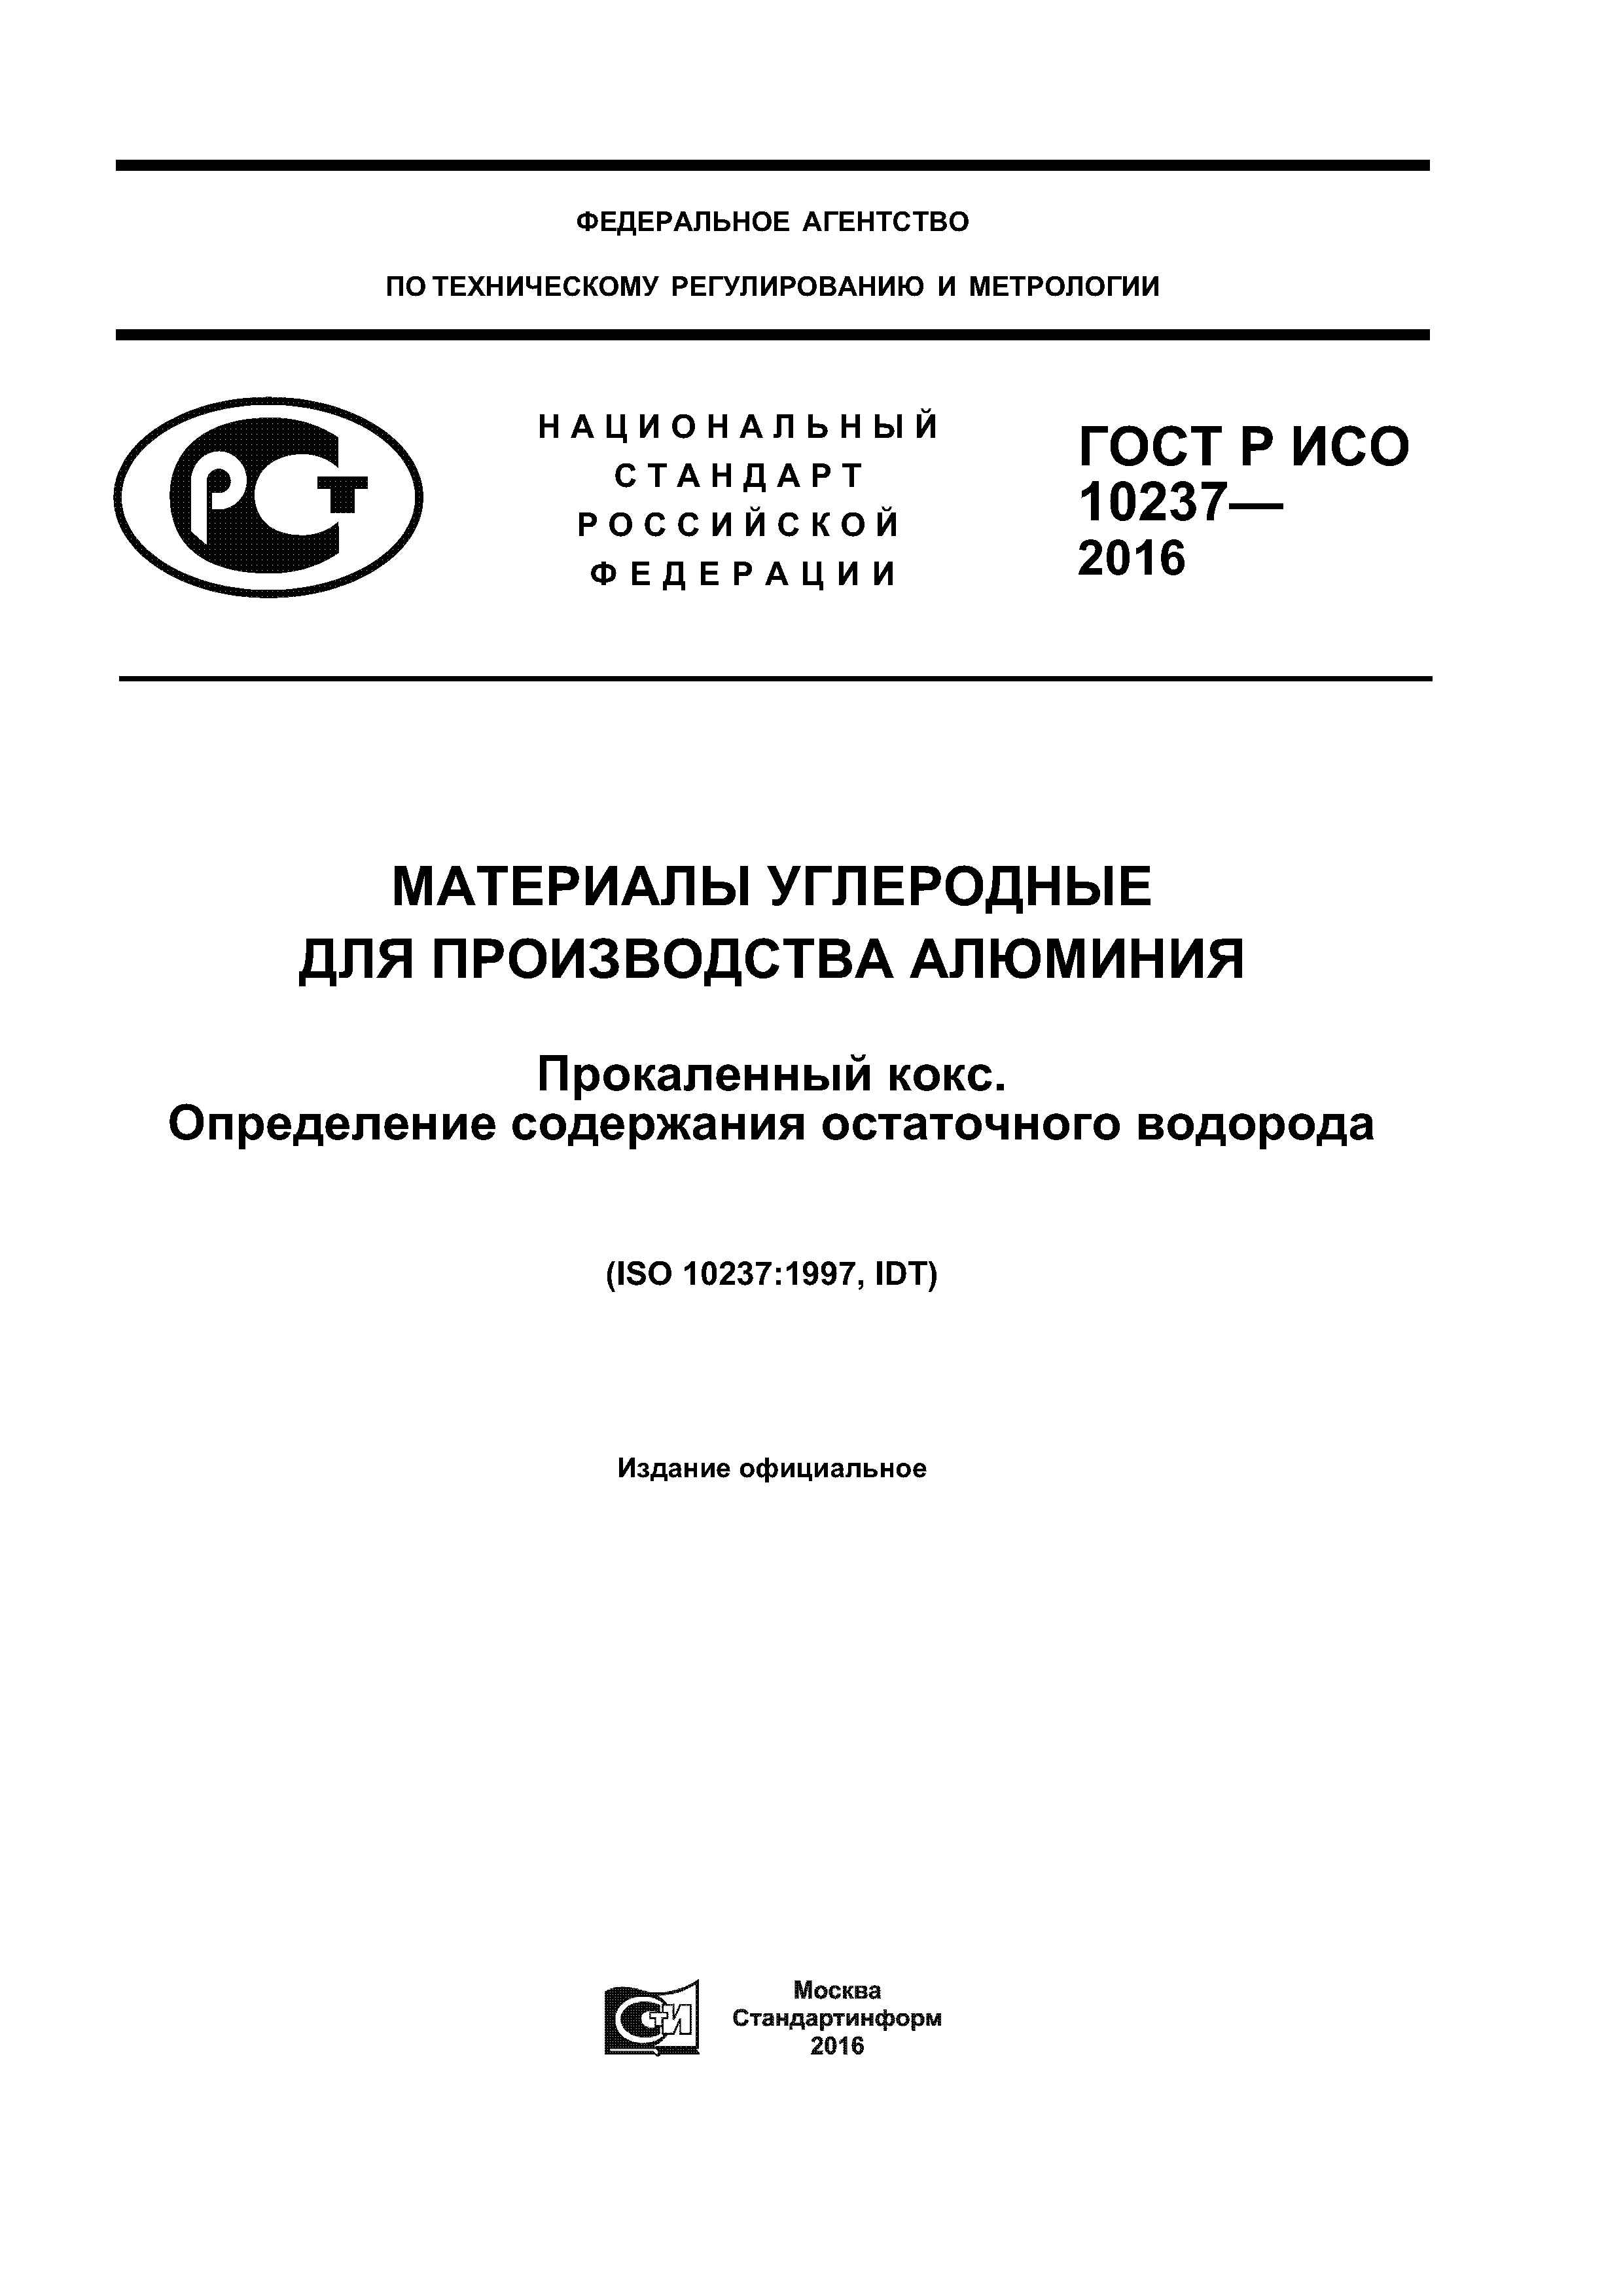 ГОСТ Р ИСО 10237-2016